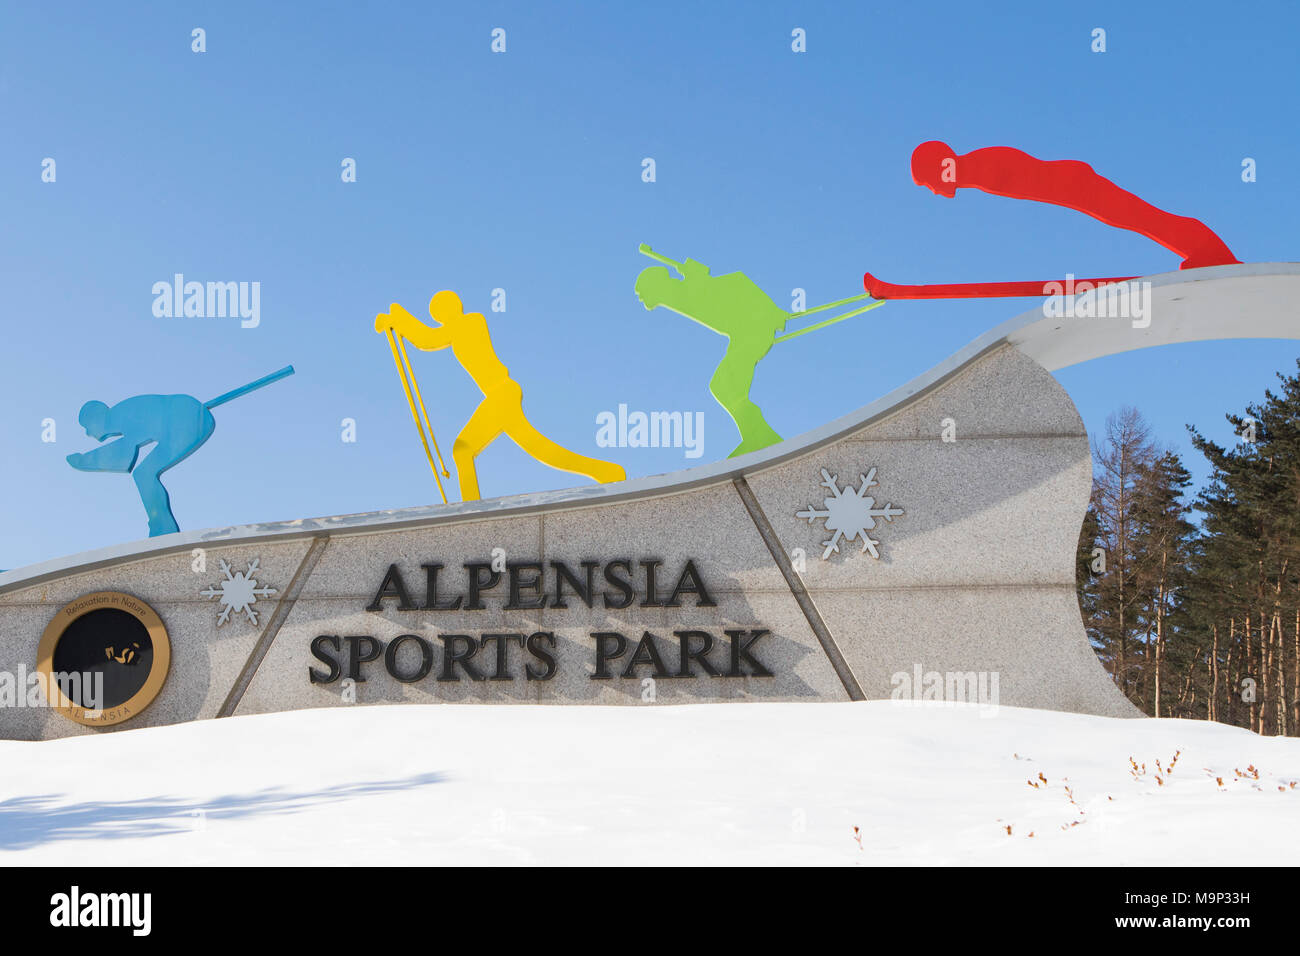 Der Eingang der Sport Arena am Alpensia Resort in Südkorea. Die alpensia Resort ist ein Skigebiet und eine touristische Attraktion. Es ist auf dem Gebiet der Gemeinde von daegwallyeong-myeon befindet sich in der Grafschaft von Pyeongchang, die Olympischen Winterspiele hosting im Februar 2018. Das Skigebiet ist ca. 2,5 Stunden von Seoul oder Incheon Airport mit dem Auto, überwiegend alle Autobahn. Alpensia hat sechs Pisten für Ski und Snowboard, mit bis zu 1,4 km (0.87 mi) lang, für Anfänger und Fortgeschrittene, und ein Bereich für Snowboarder vorbehalten. Während das Resort ist ganzjährig geöffnet, die Stockfoto